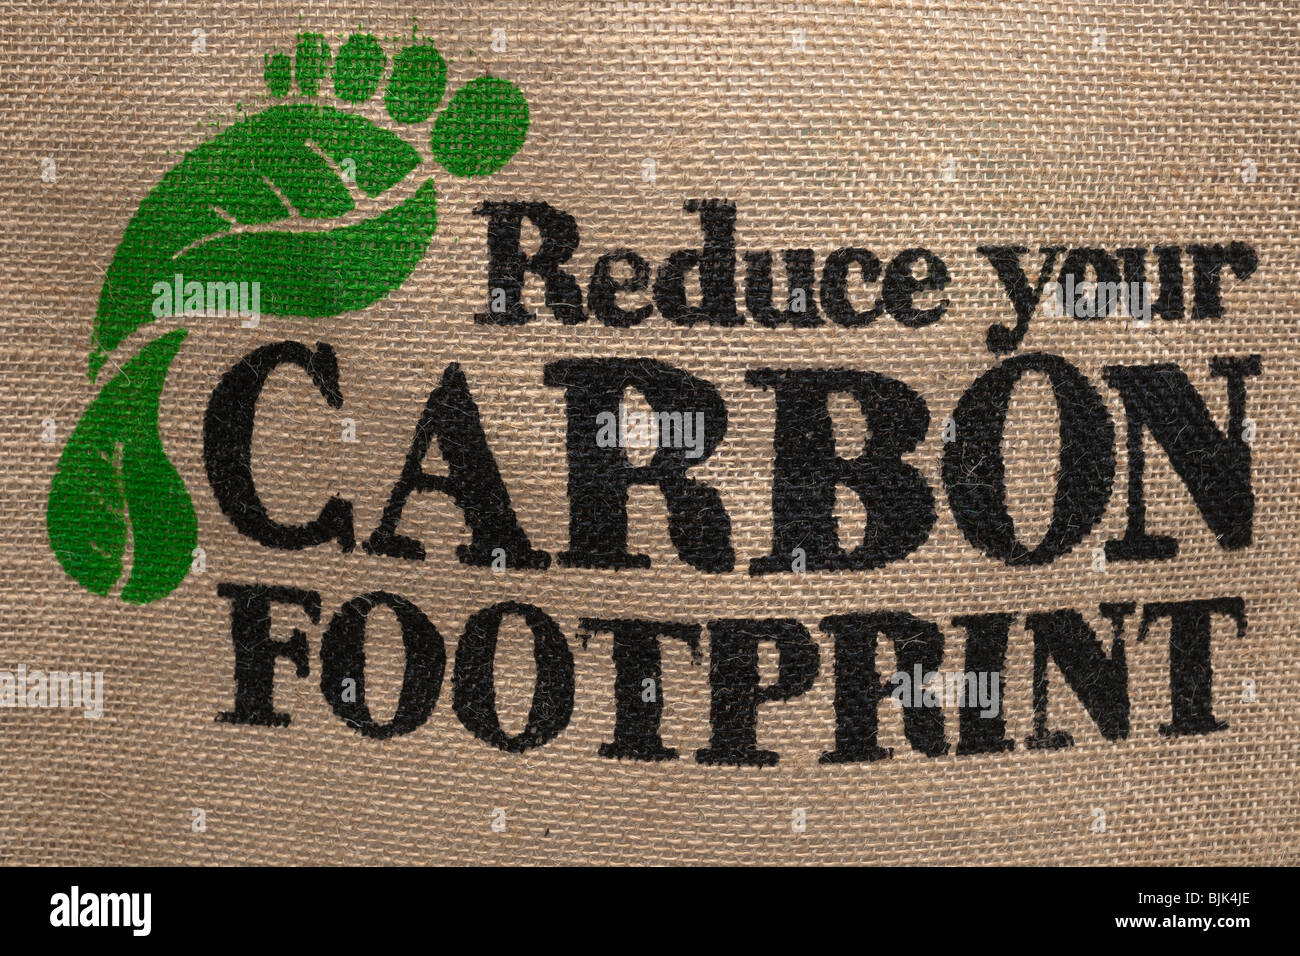 Reduzieren Sie Ihren CO2-Fußabdruck Stockfoto